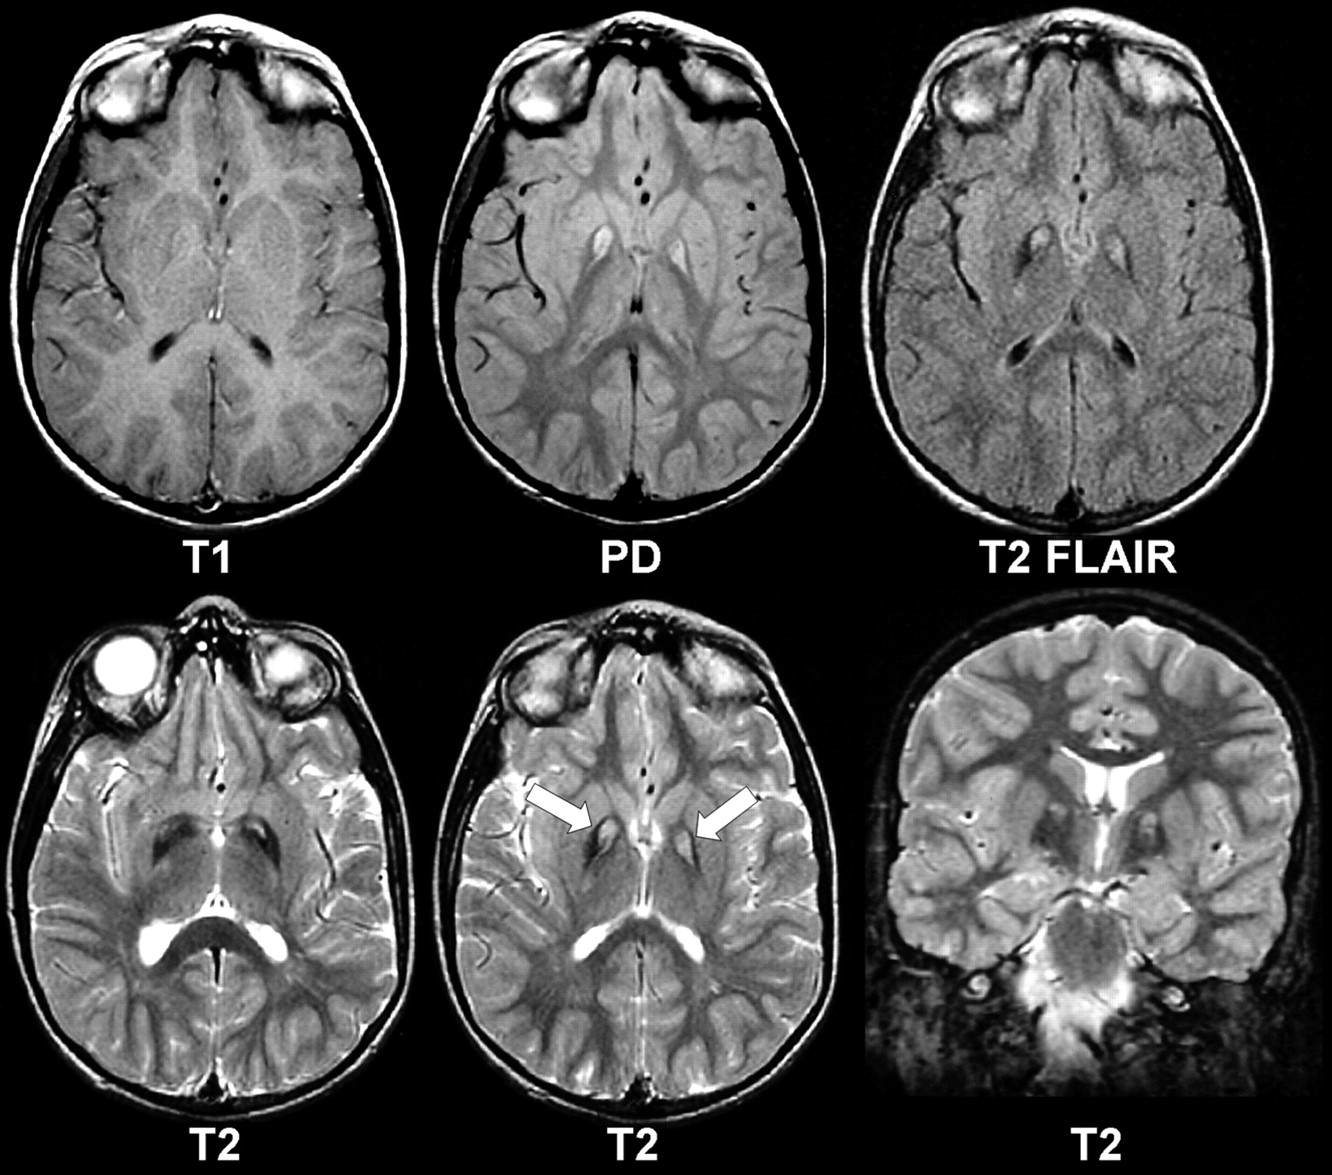 Патологии на мрт. Компьютерная томография кт головного мозга. Кт томограмма головного мозга. Галлервордена Шпатца кт.